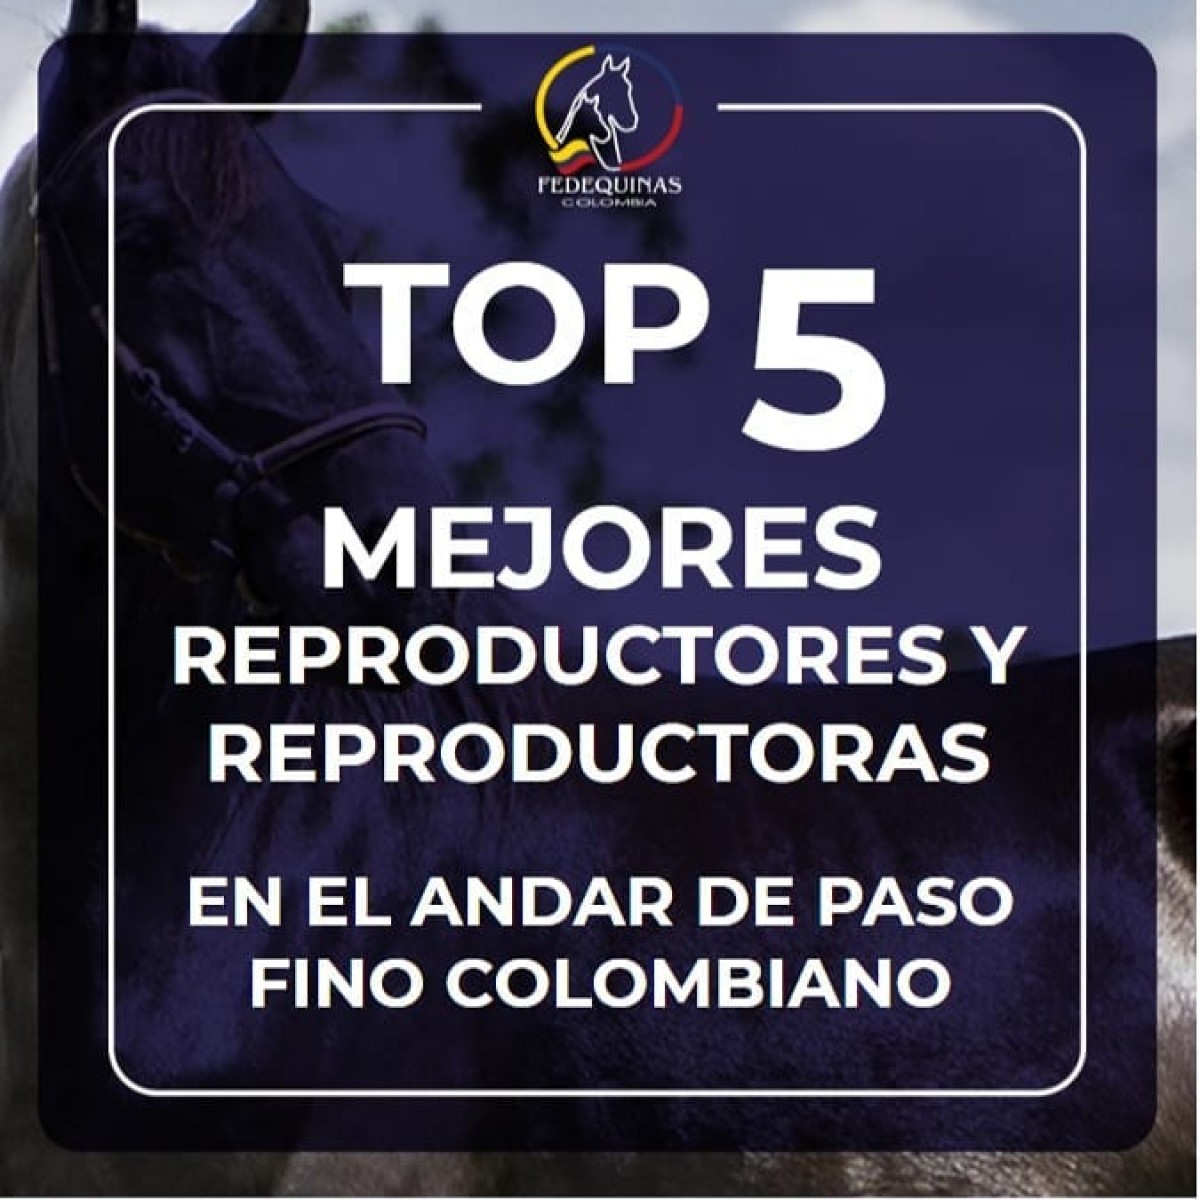 Top 5 Mejores Reproductores y Reproductoras Paso Fino Colombiano